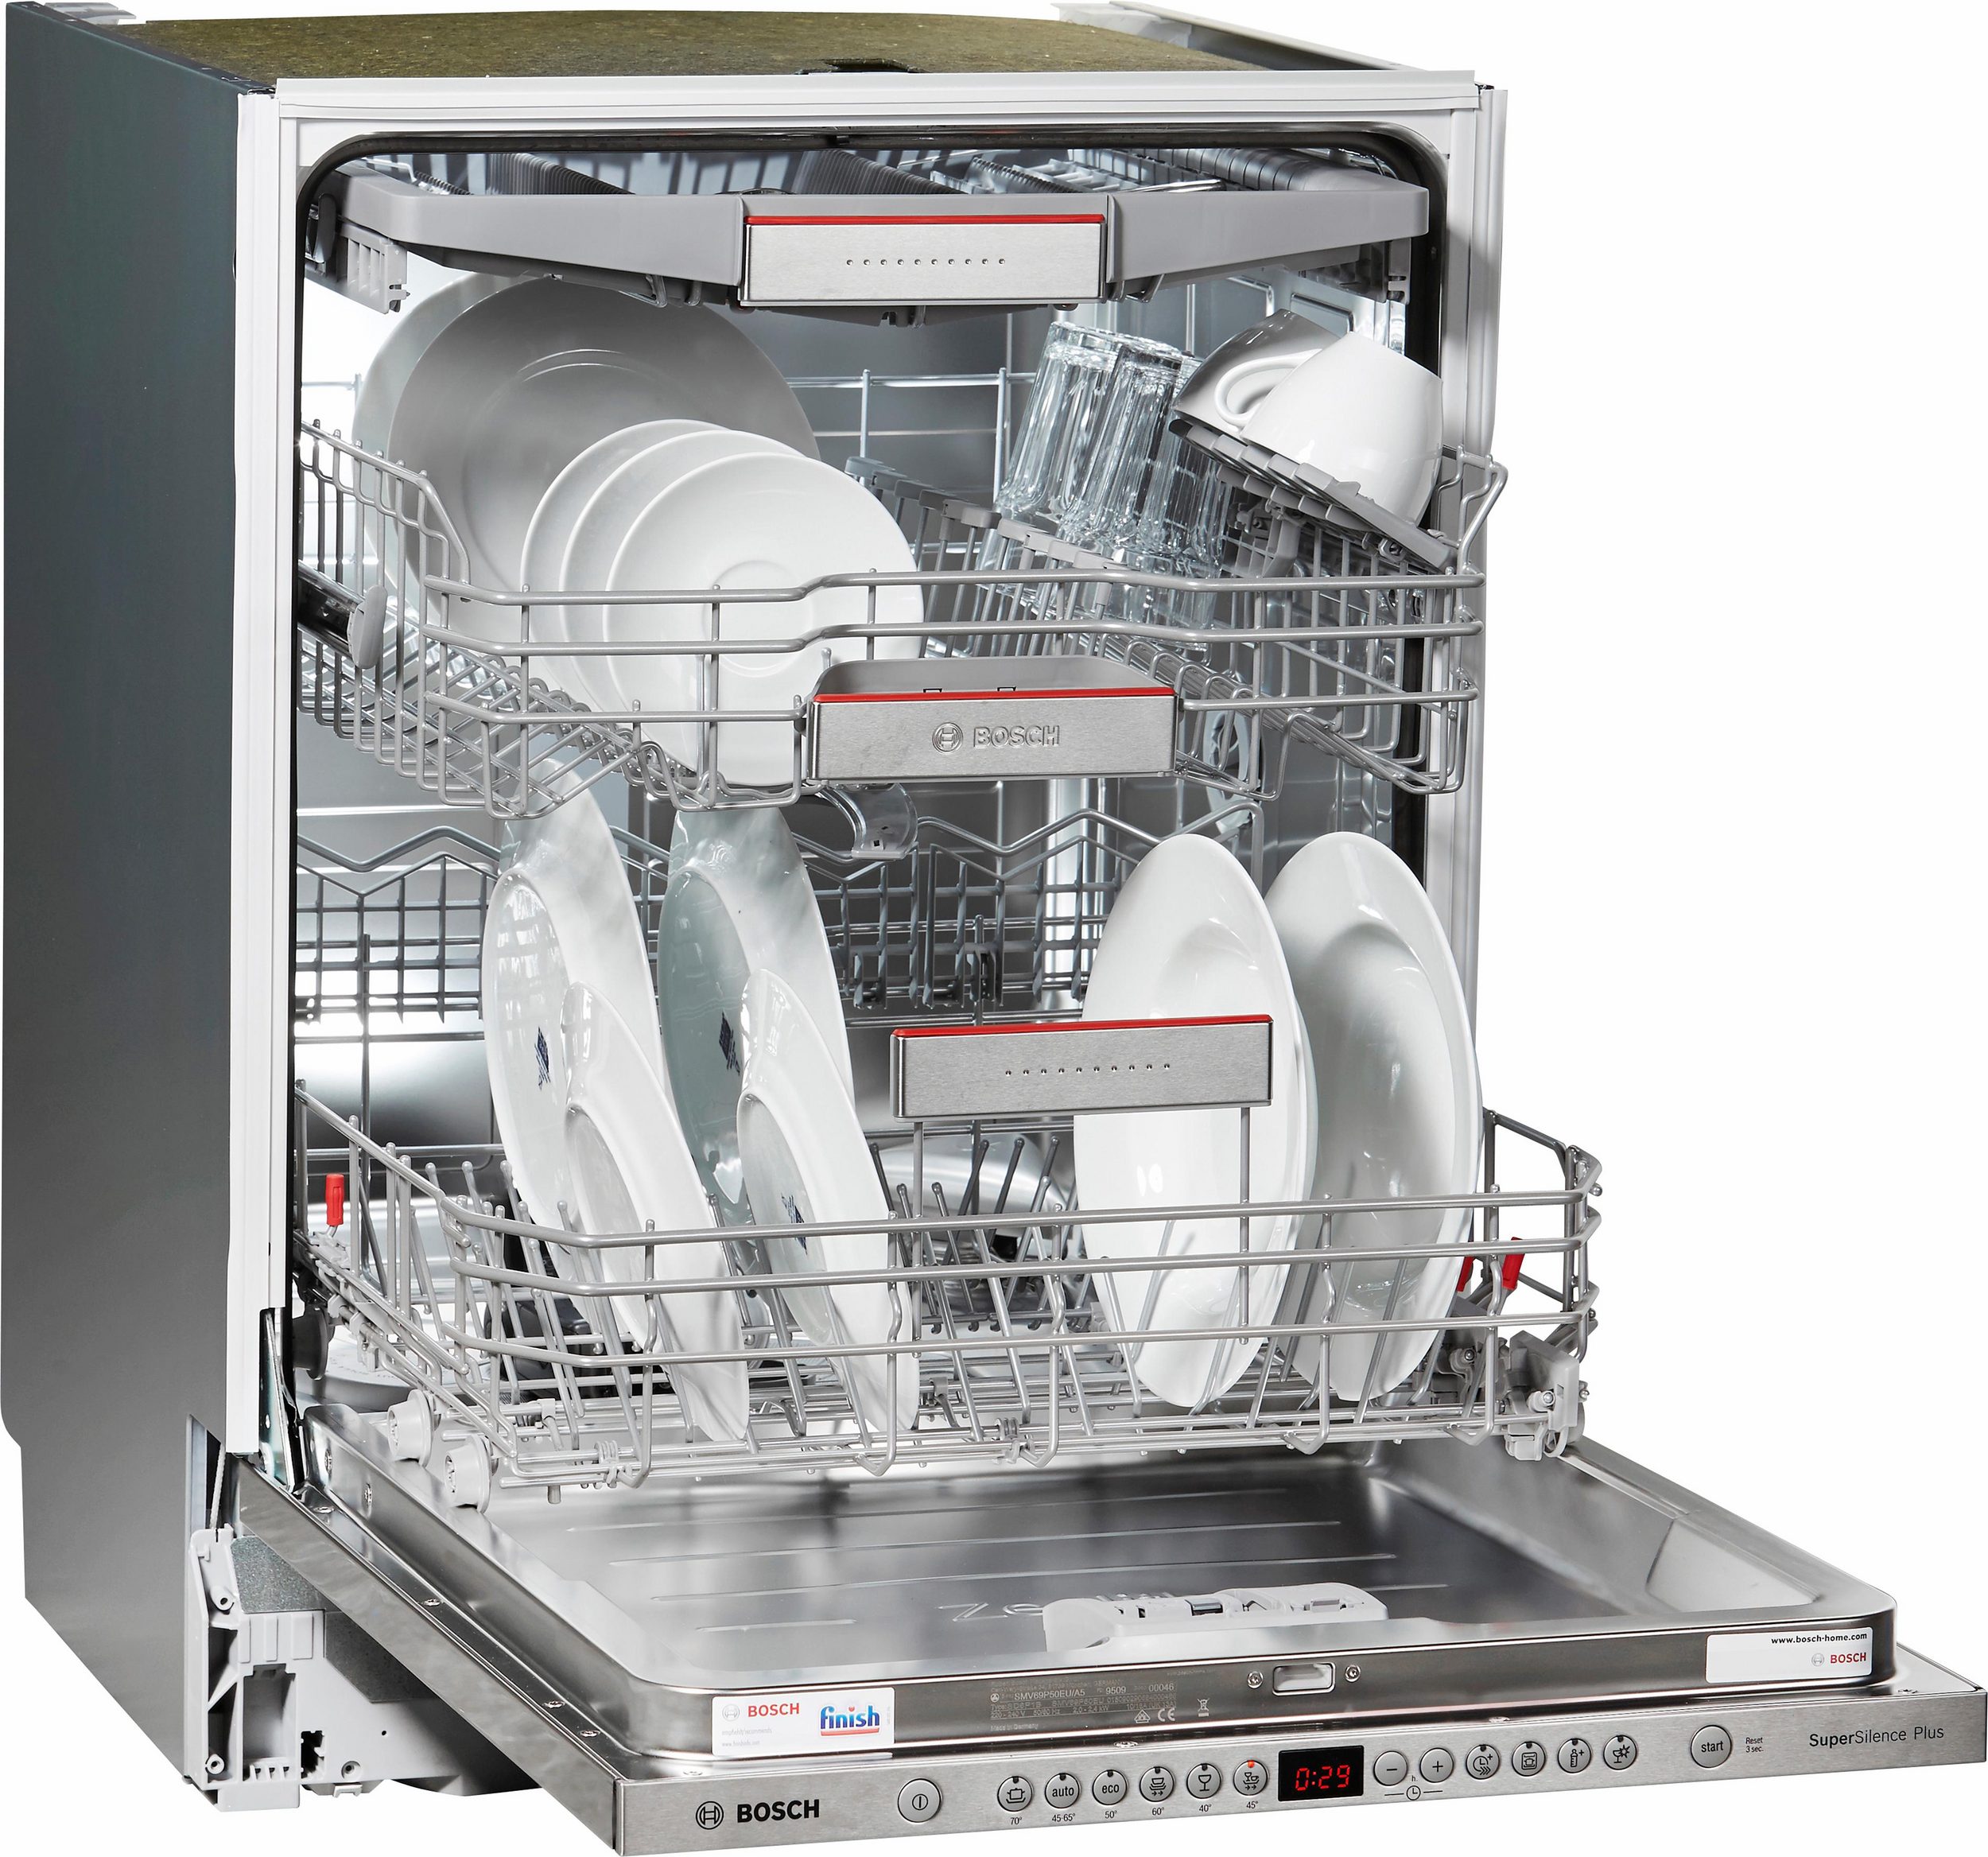 Посудомоечная машина bosch spv4xmx28e. Посудомоечная машина бош 60 см встраиваемая. Посудомойка бош sms45di10q. Посудомоечная машина Bosch spv6hmx1mr. Посудомоечная машина Bosch SMV 24ax02 e.